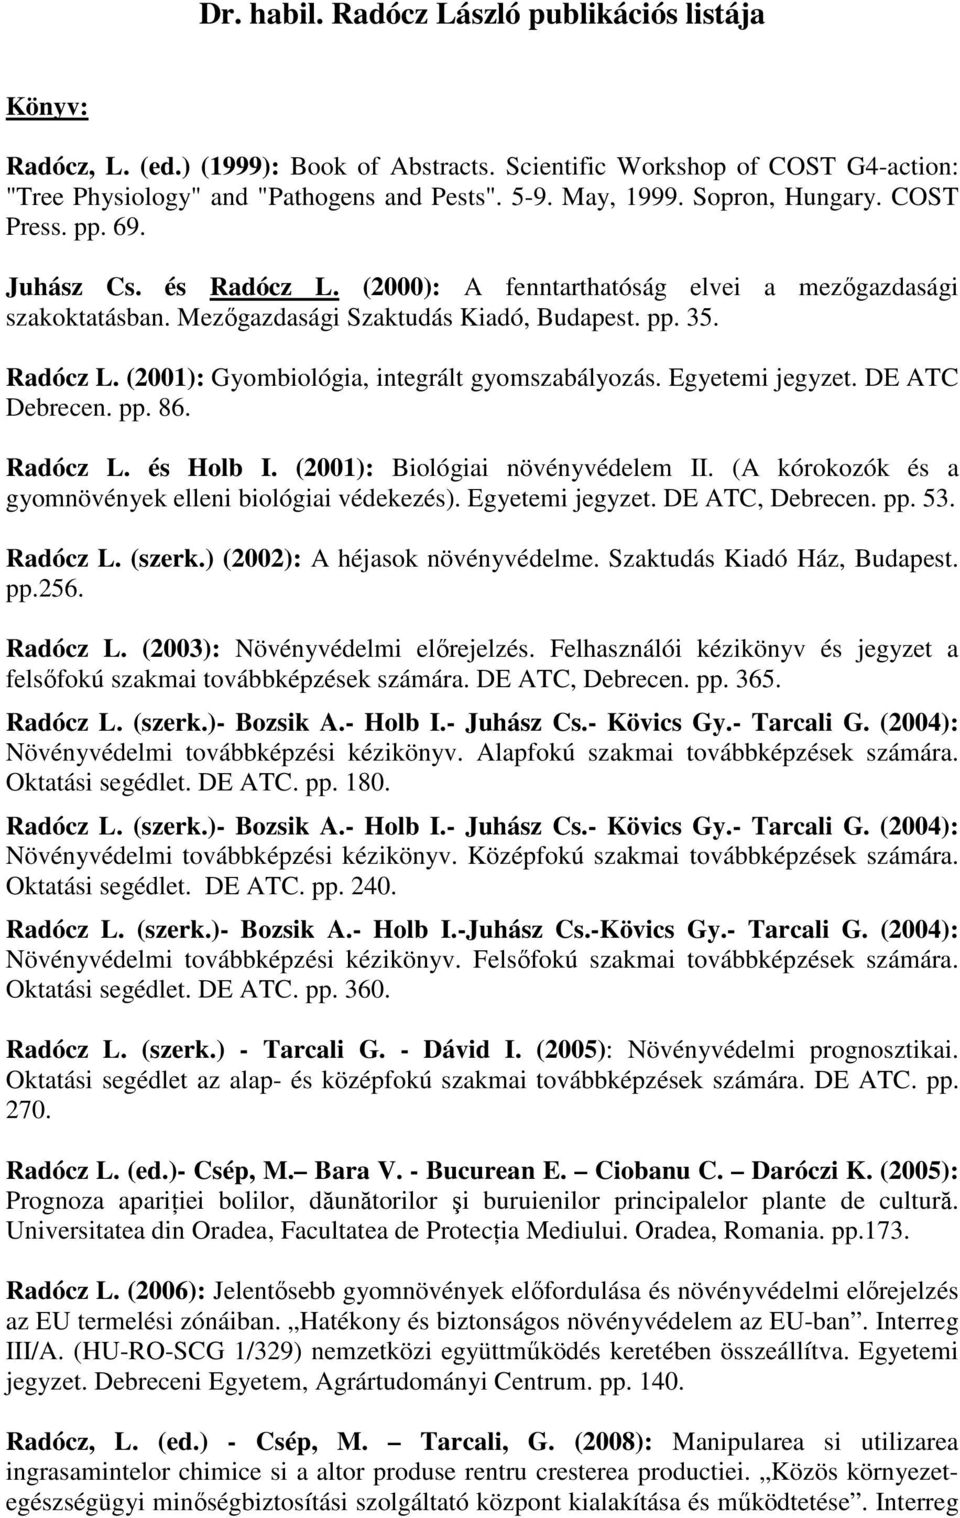 Egyetemi jegyzet. DE ATC Debrecen. pp. 86. Radócz L. és Holb I. (2001): Biológiai növényvédelem II. (A kórokozók és a gyomnövények elleni biológiai védekezés). Egyetemi jegyzet. DE ATC, Debrecen. pp. 53.